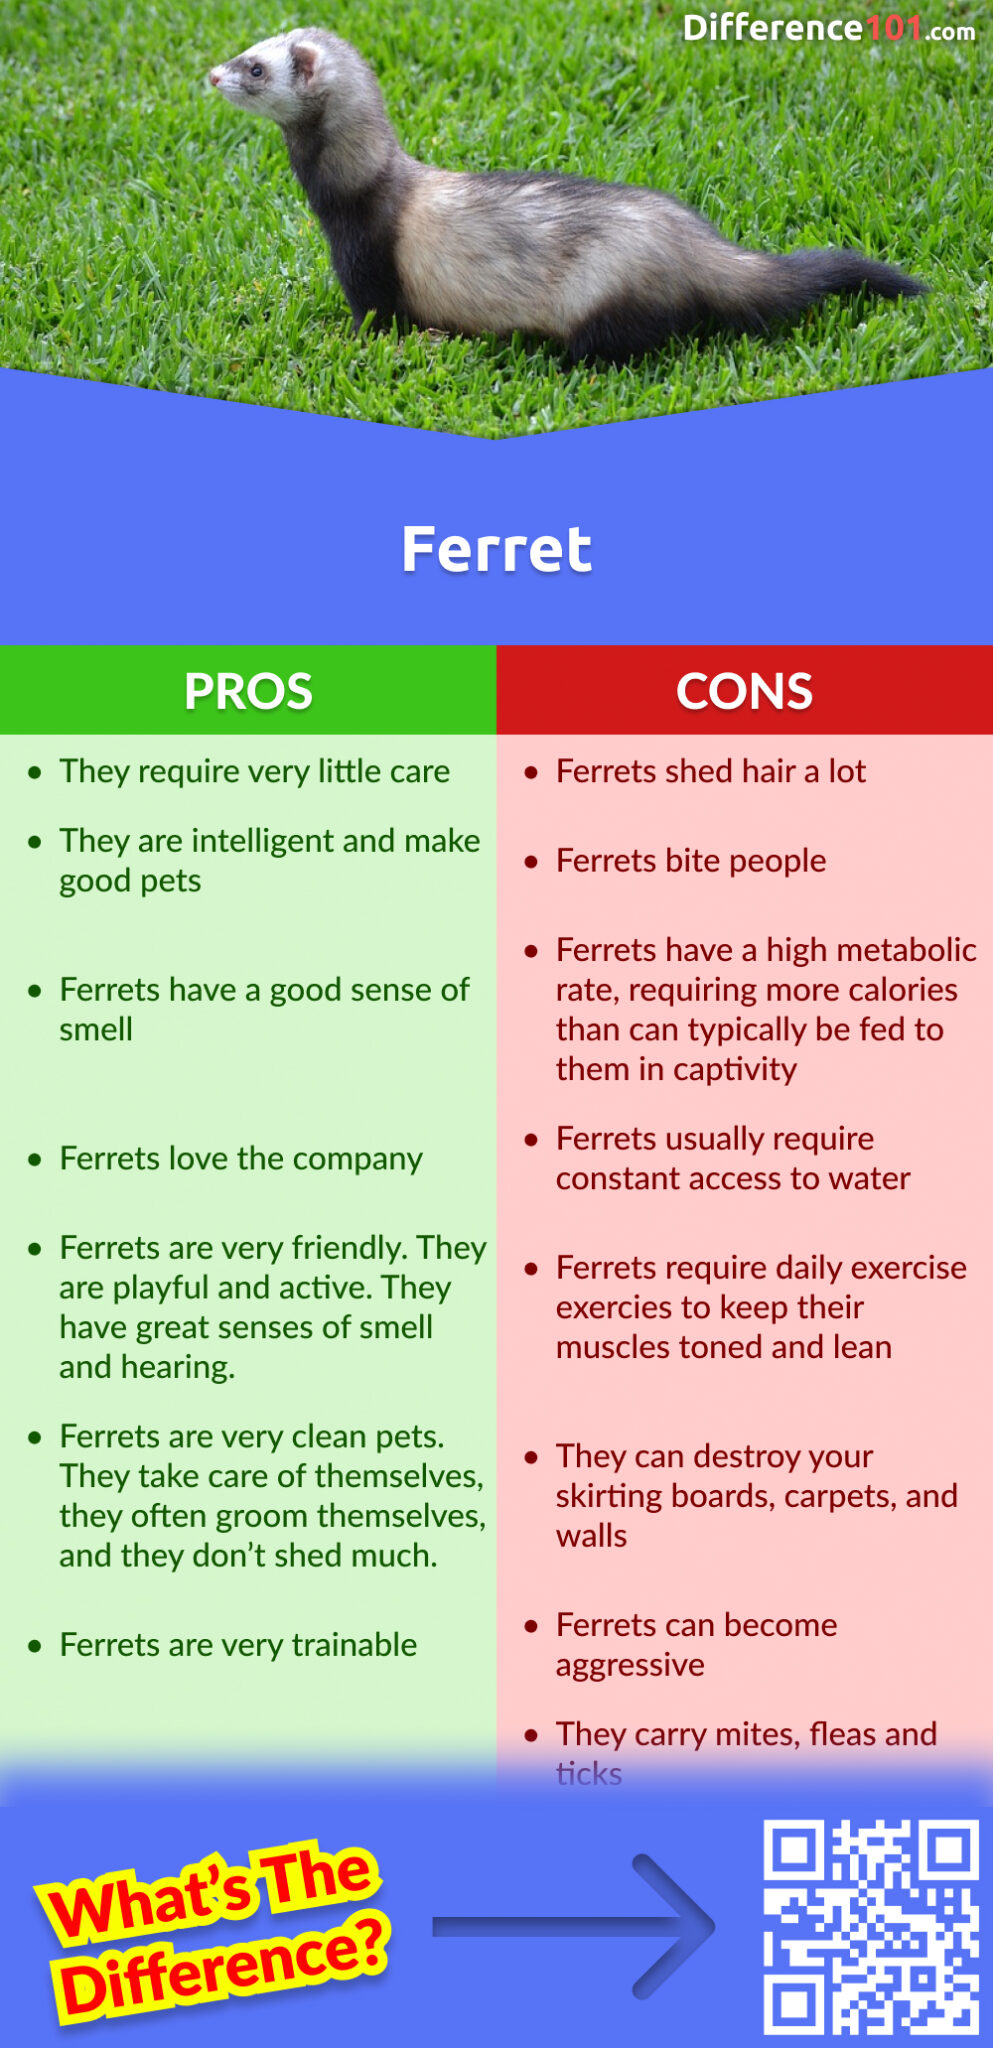 Ferret Pros & Cons